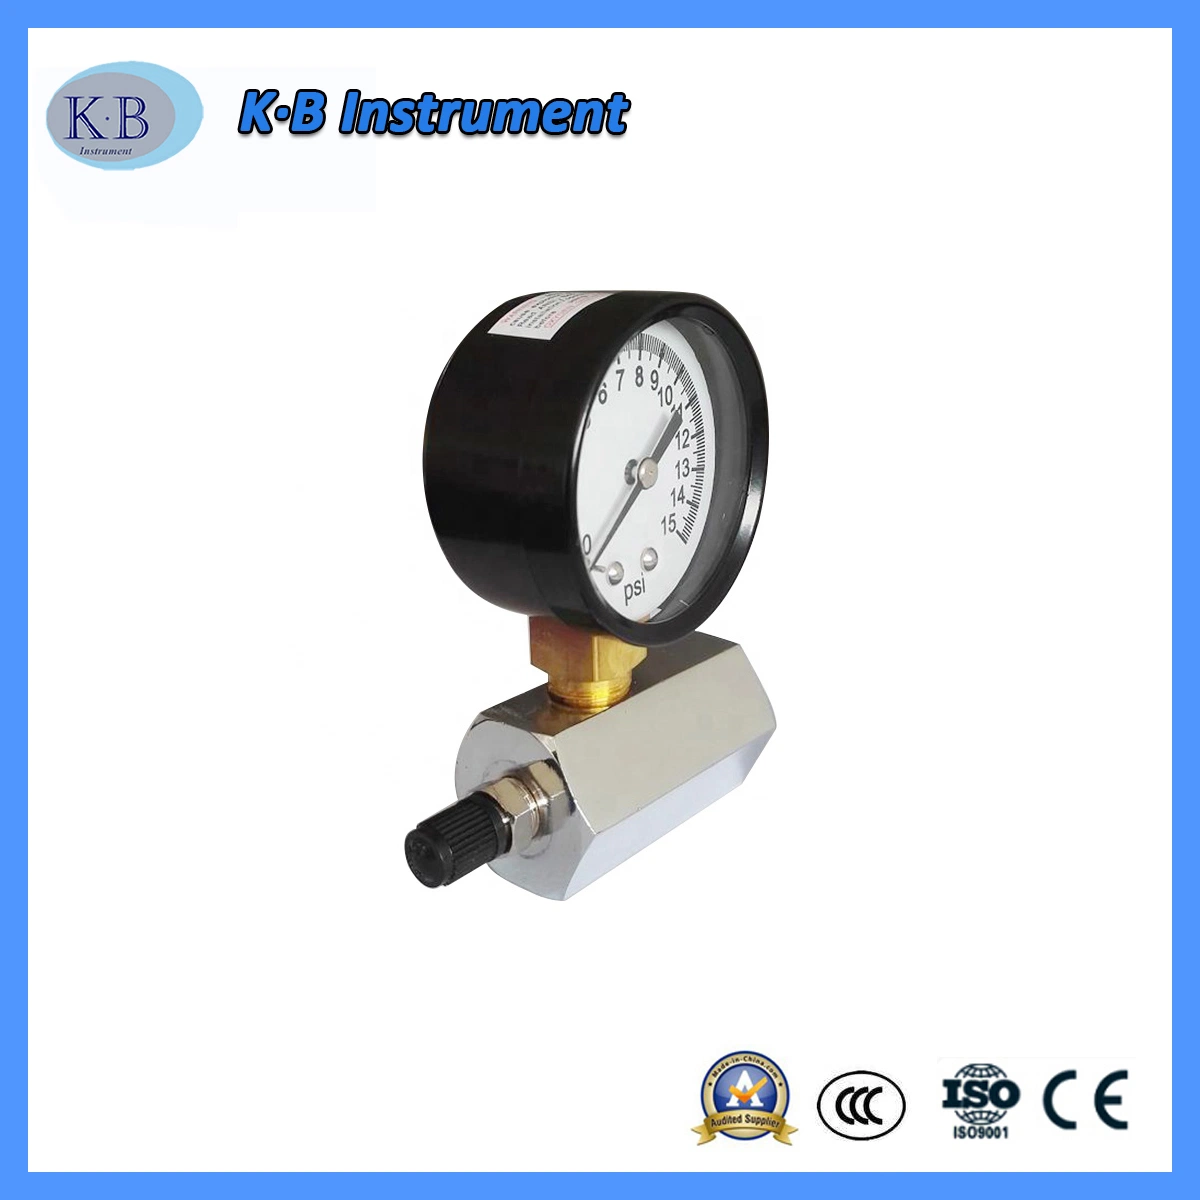 مقياس الضغط 2 بوصة جهاز التركيب السفلي مقياس ضغط اختبار الغاز 0-15 رطل لكل بوصة مربعة